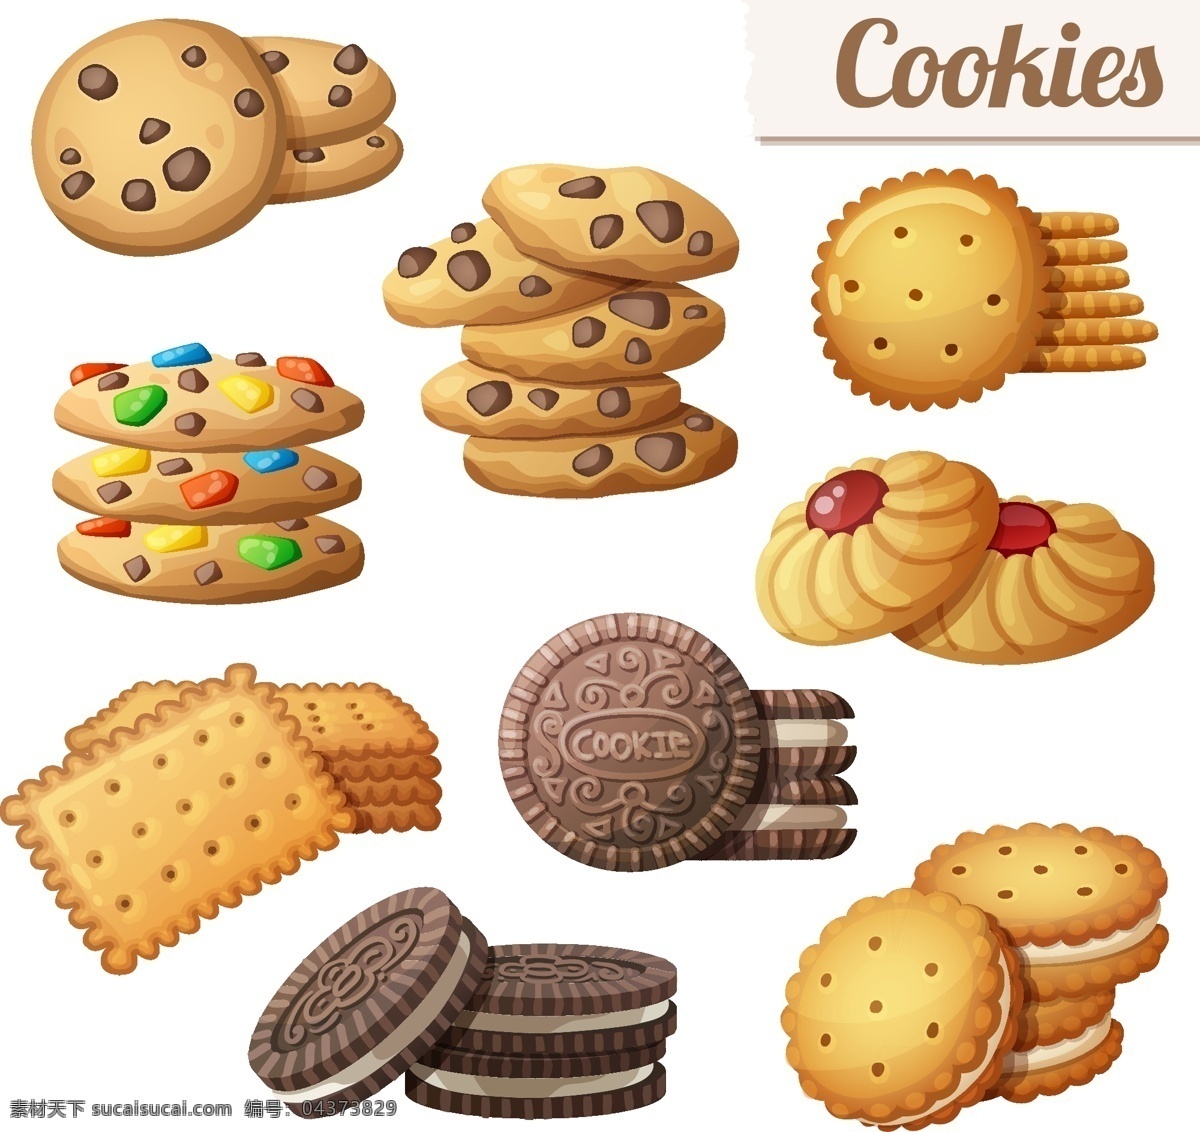 曲奇 饼干 食物 图标 矢量 卡通 设计素材 平面素材 奥利奥 巧克力